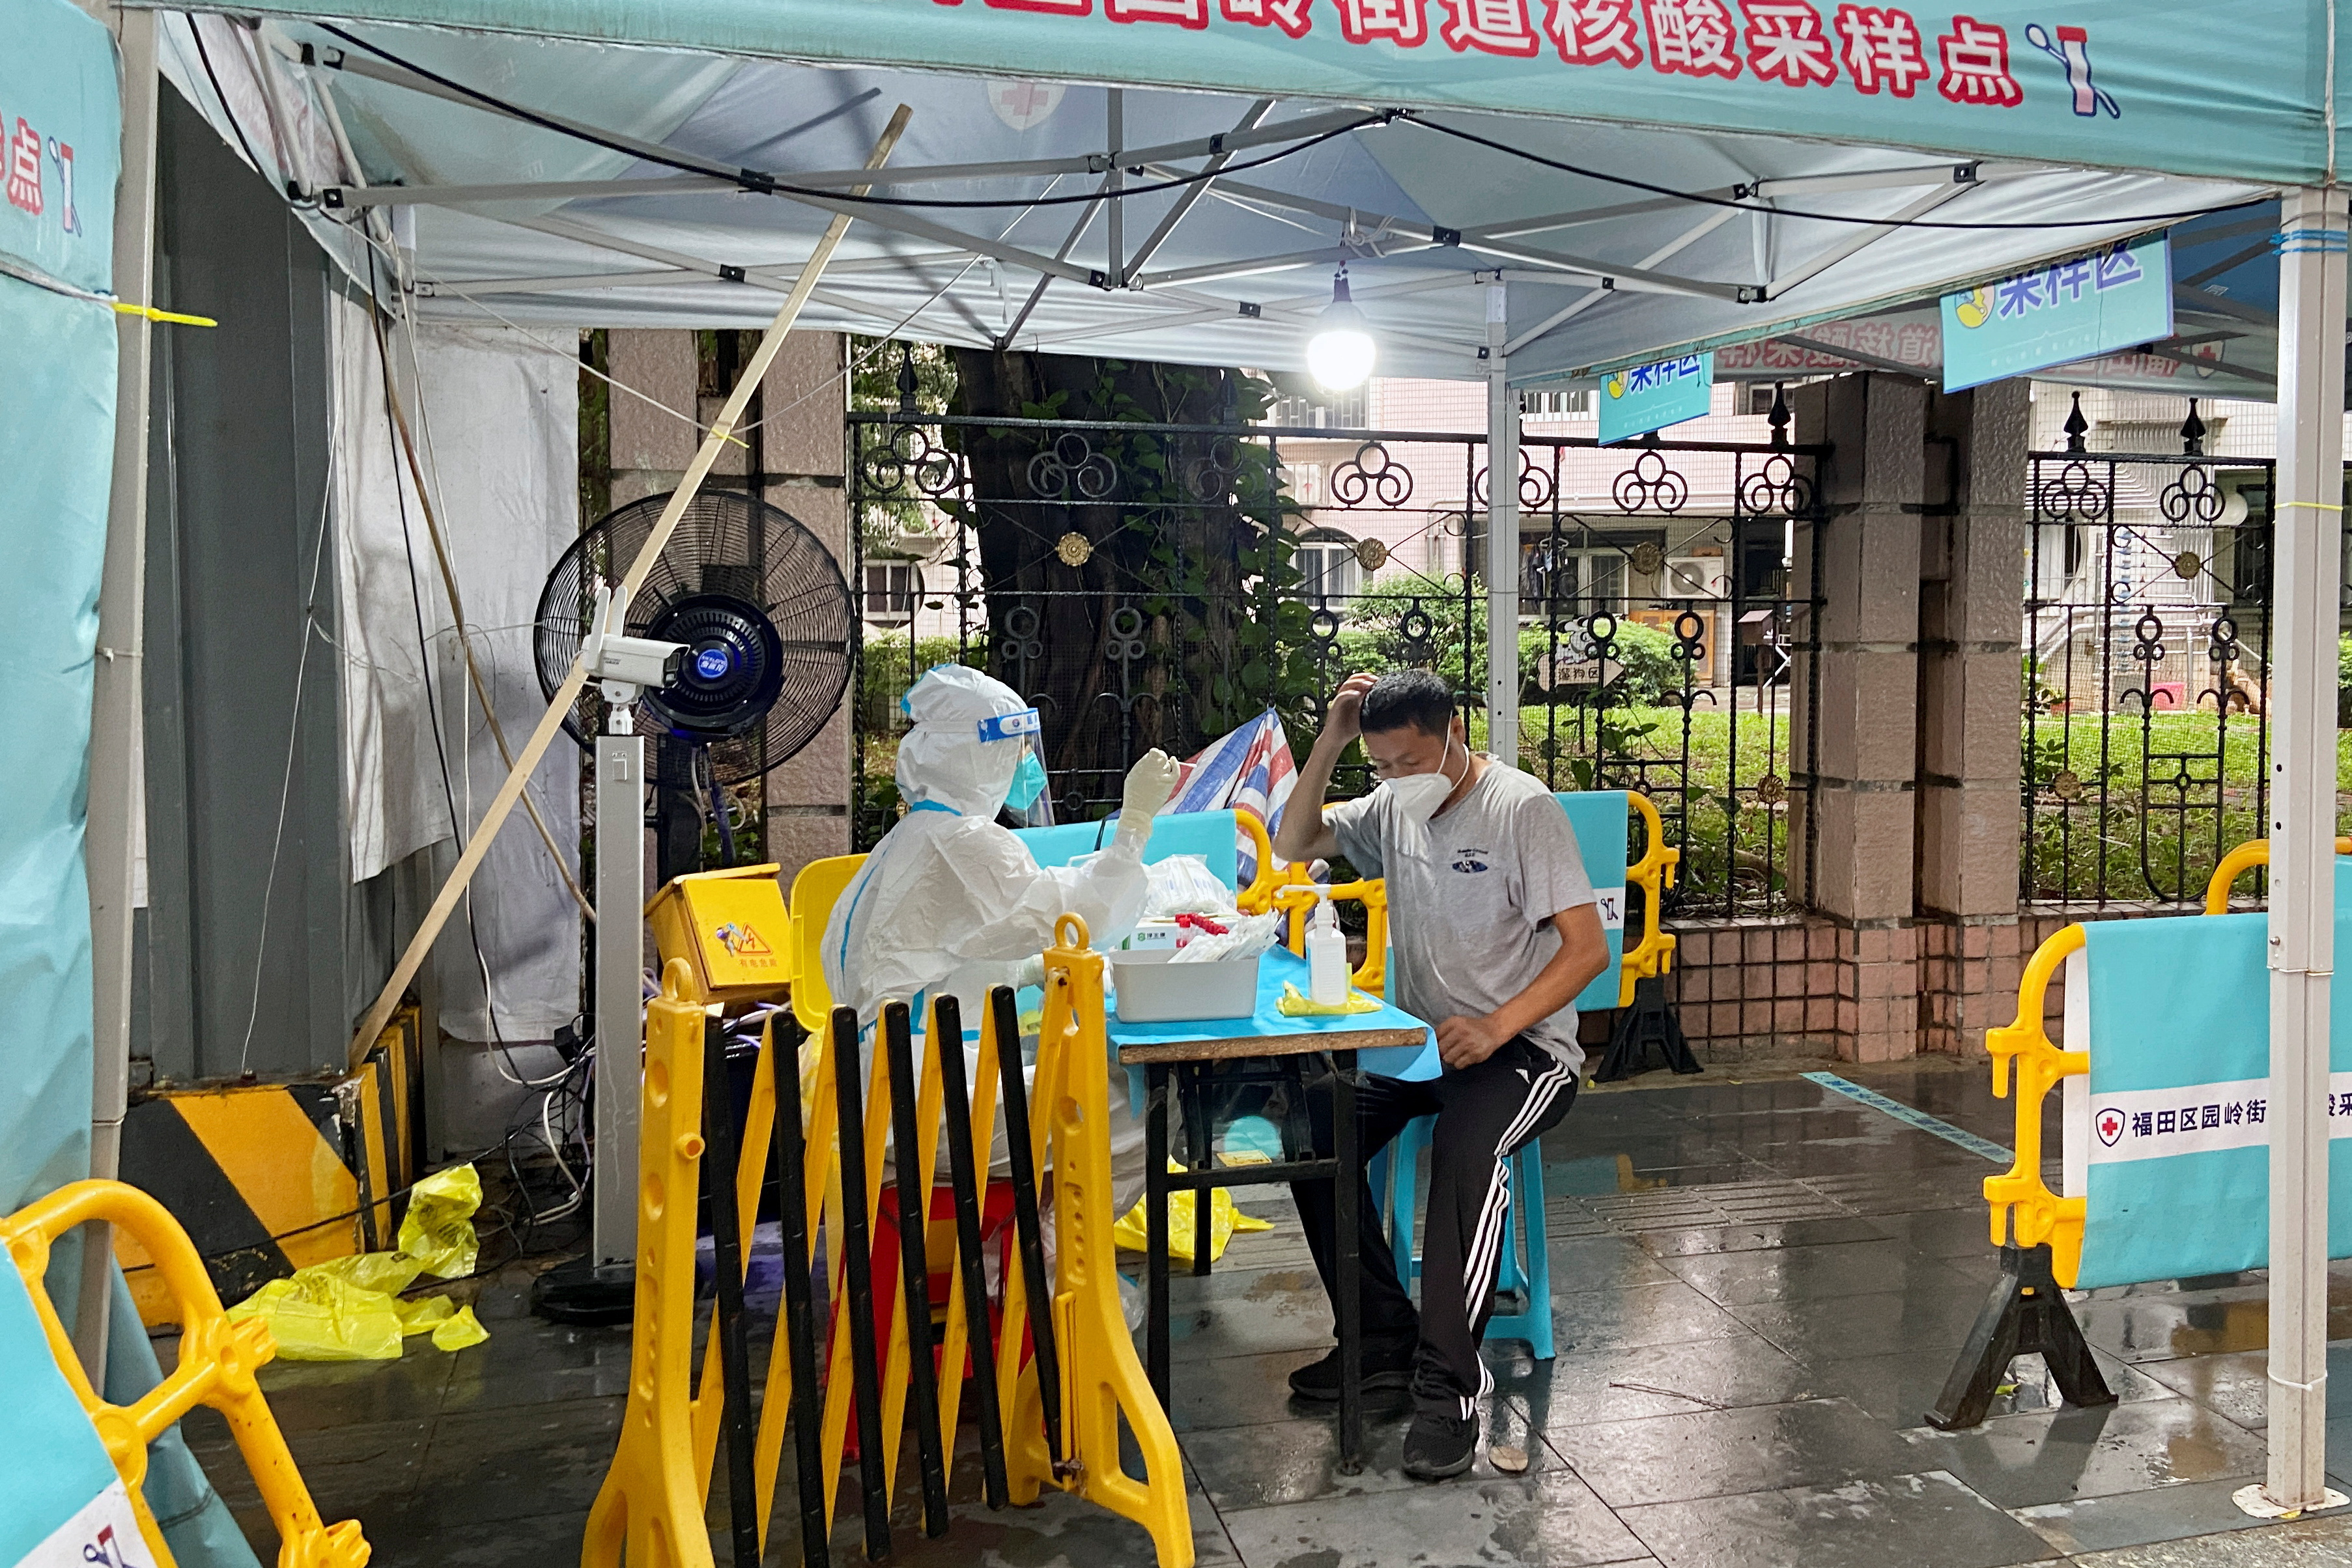 COVID-19 outbreak in Shenzhen